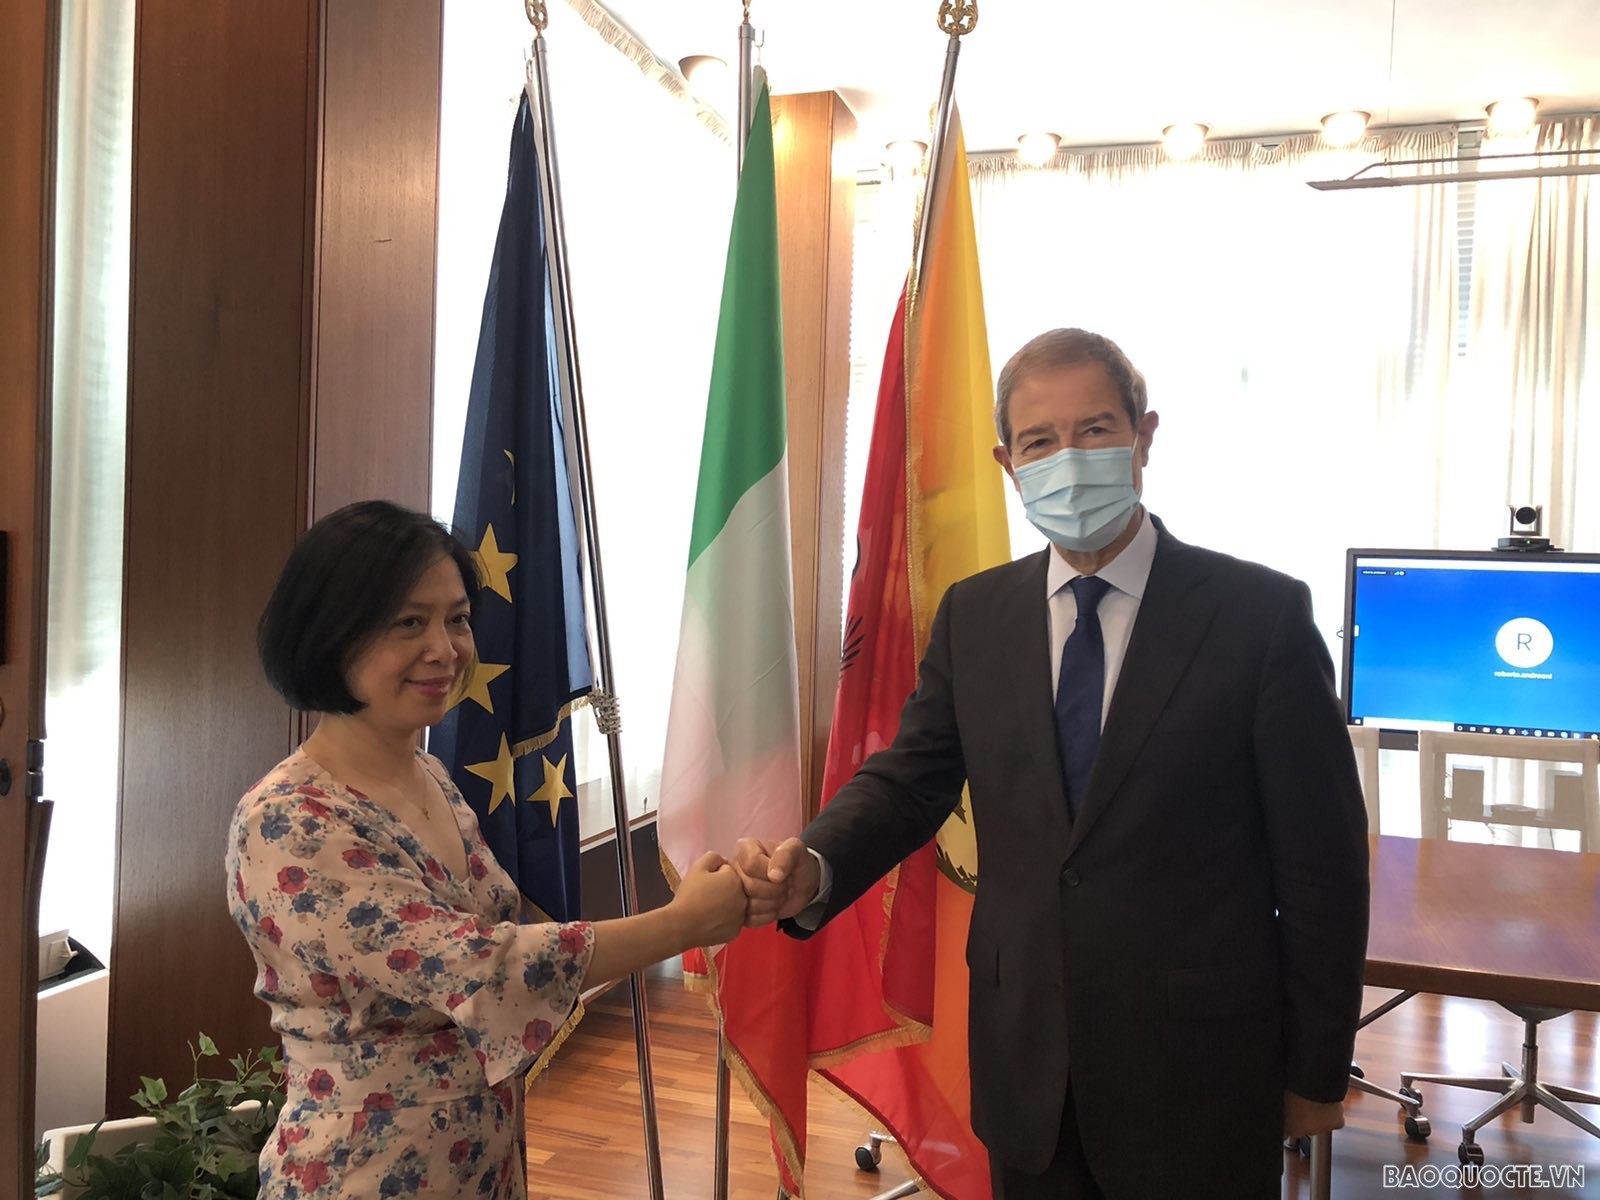 Đại sứ Việt Nam tại Italy Nguyễn Thị Bích Huệ gặp Chủ tịch Vùng Sicilia Nello Musumeci.